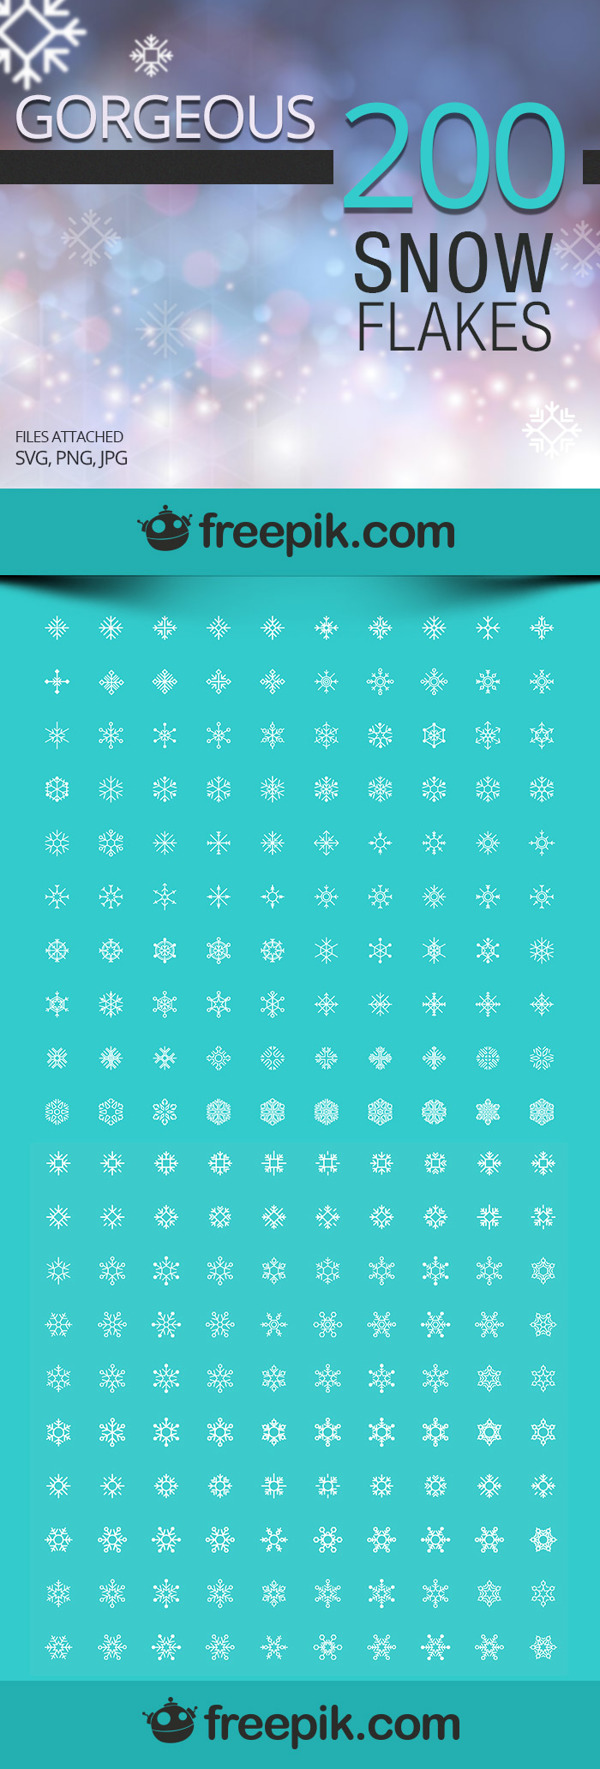 Free Snowflakes Icons